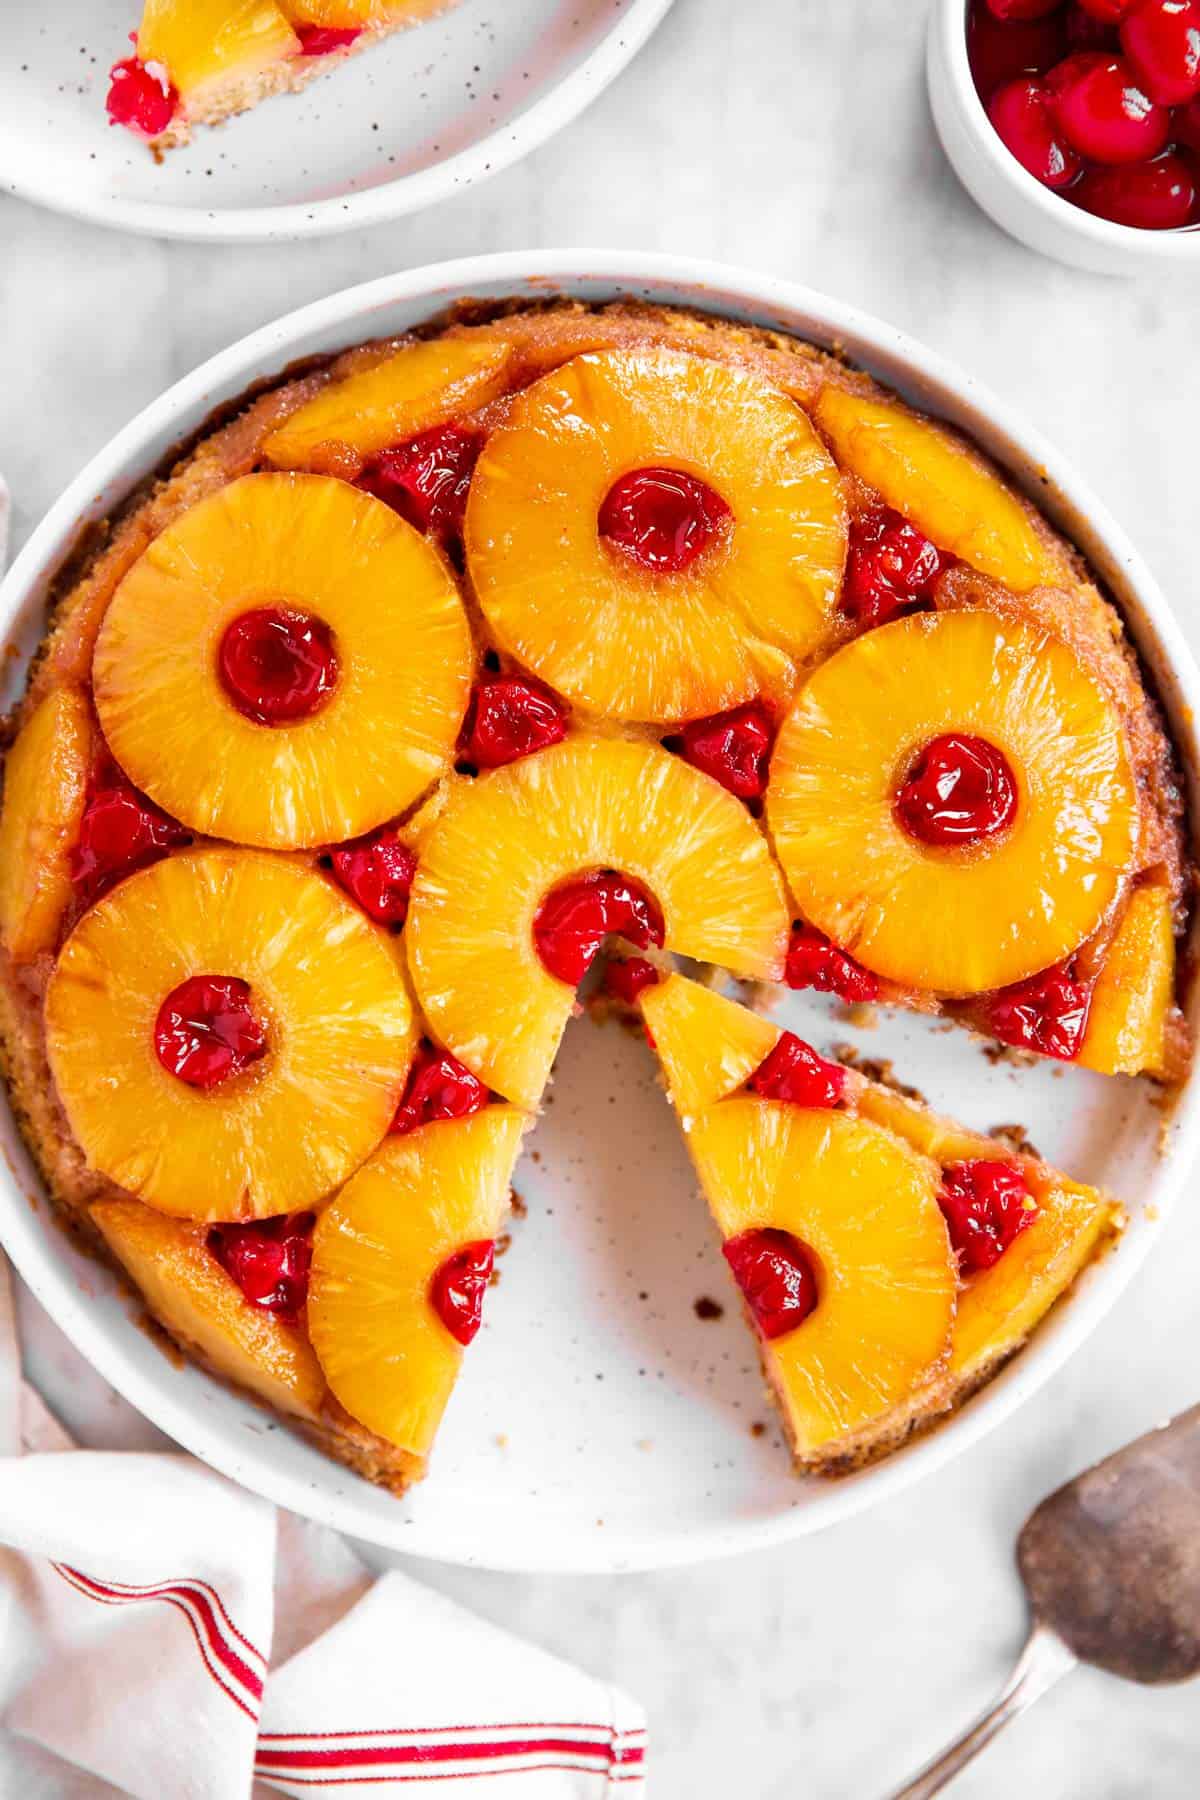 Pineapple Upside-Down Cake Recipe (With Maraschino Cherries)